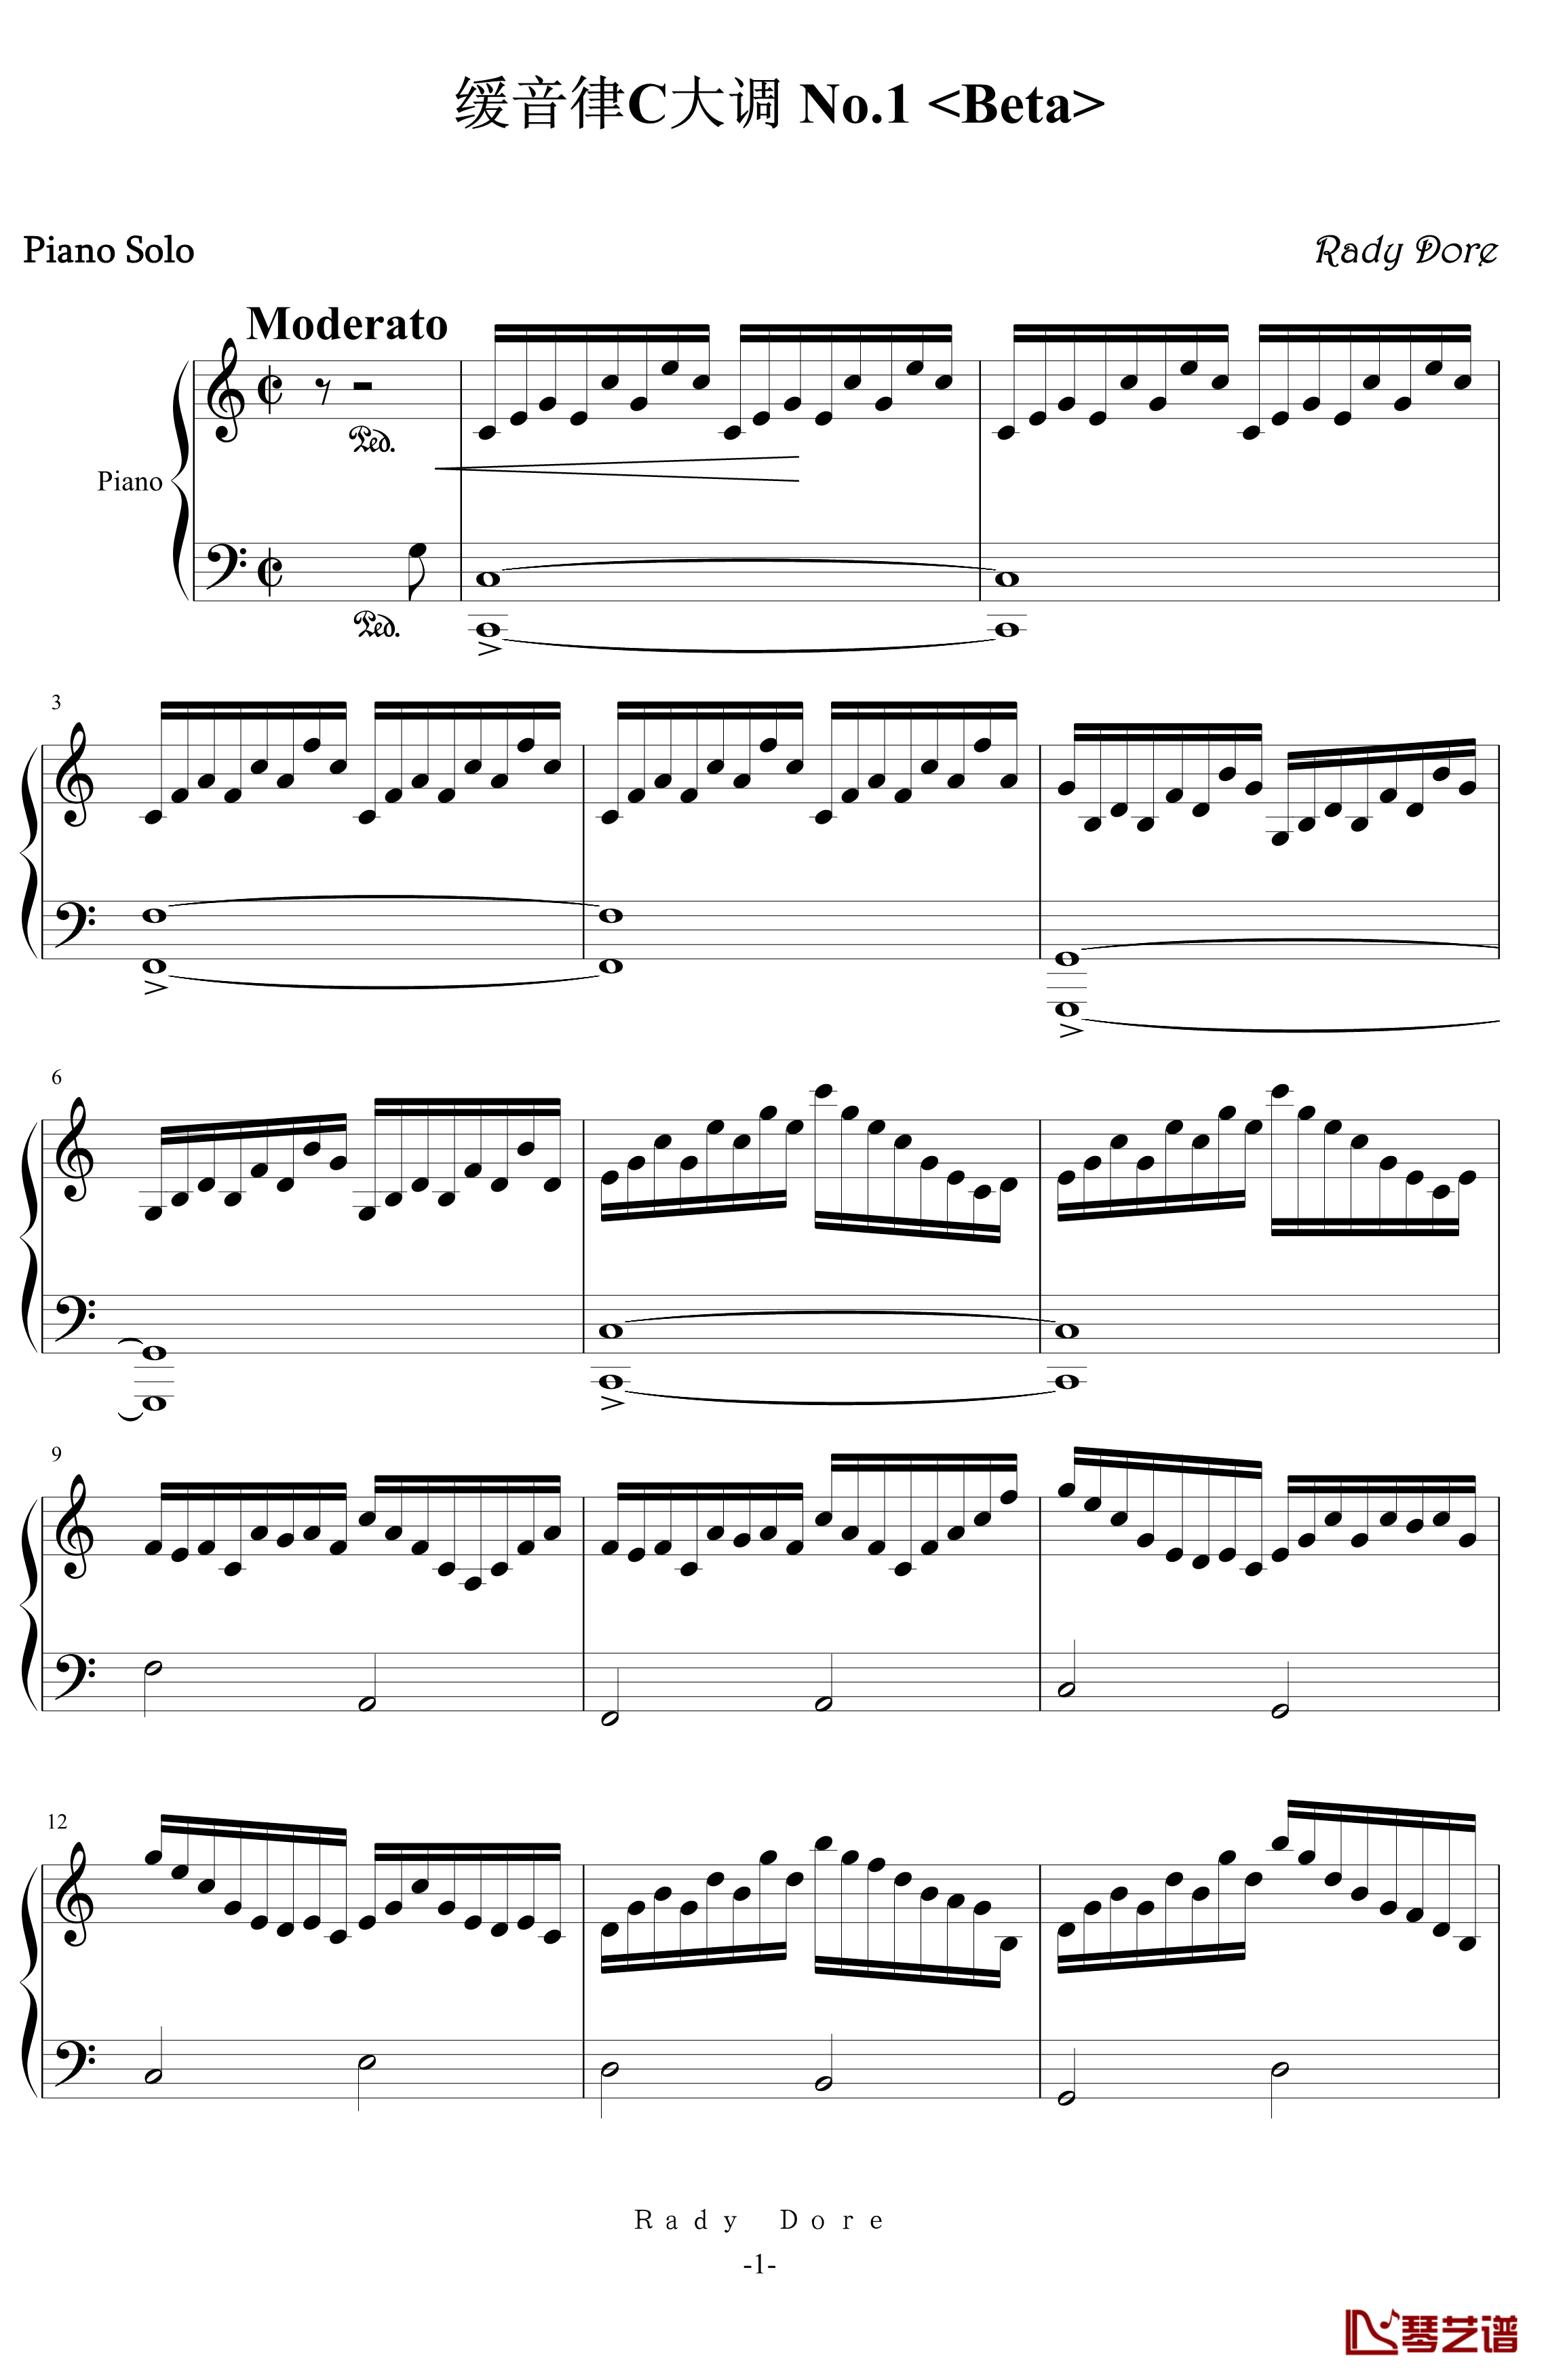 缓音律C大调 No.1钢琴谱-初版-舍勒七世1